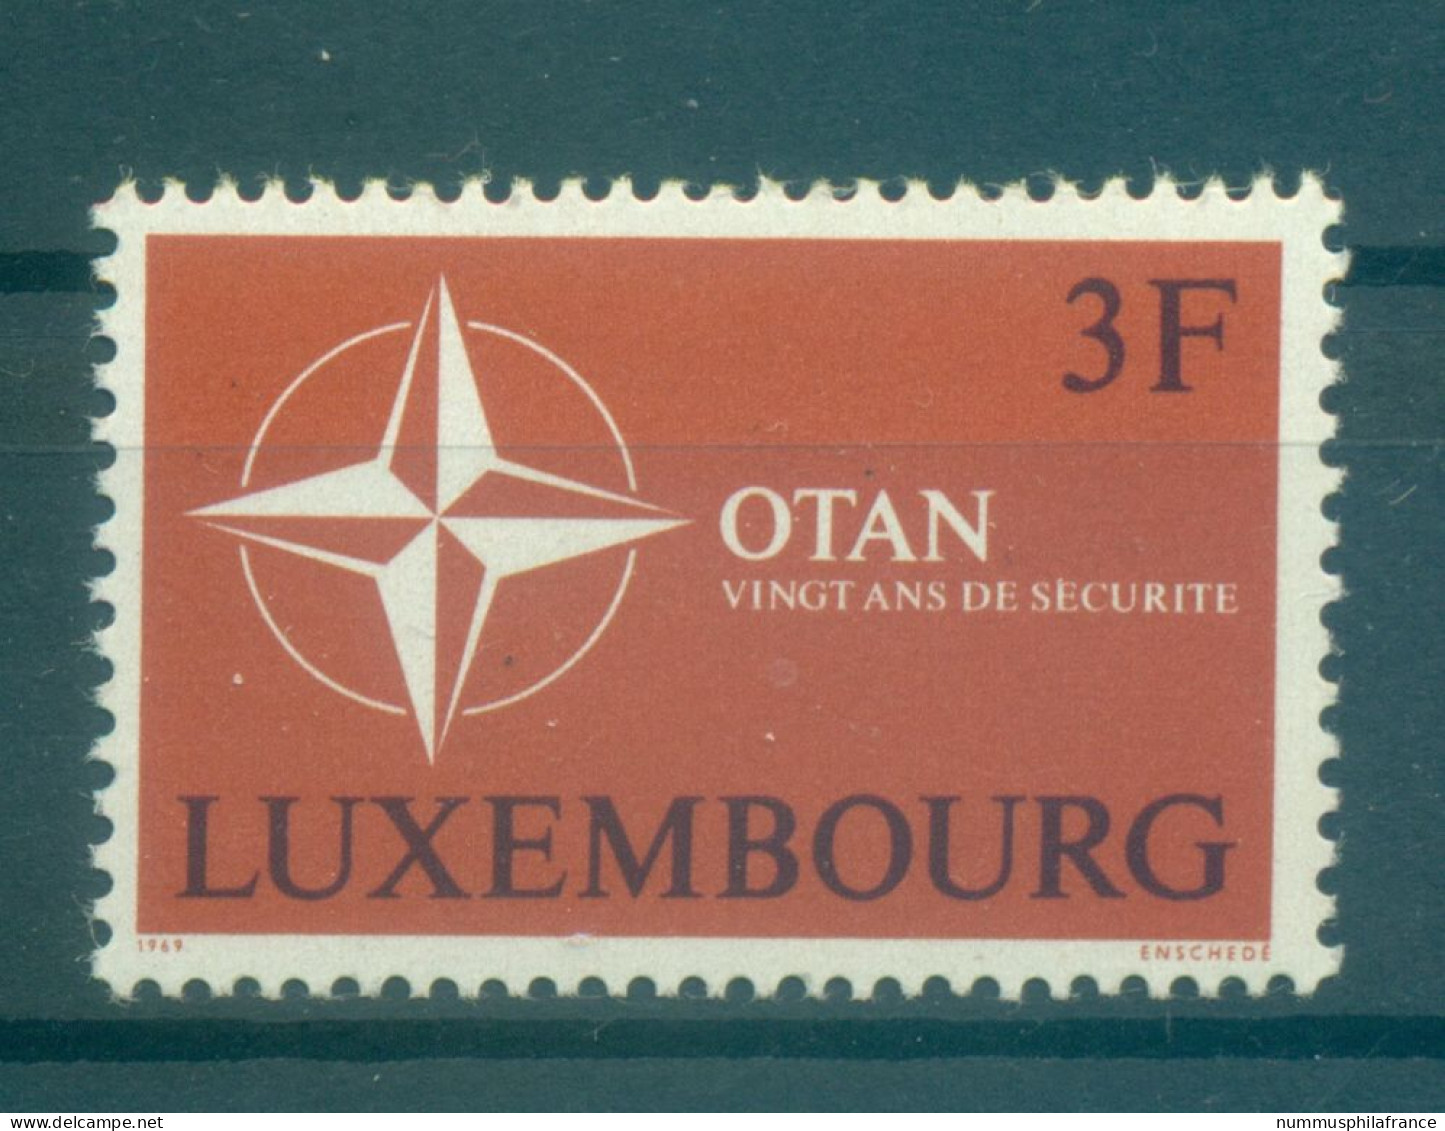 Luxembourg 1969 - Y & T N. 744 - OTAN (Michel N. 794) - Ungebraucht